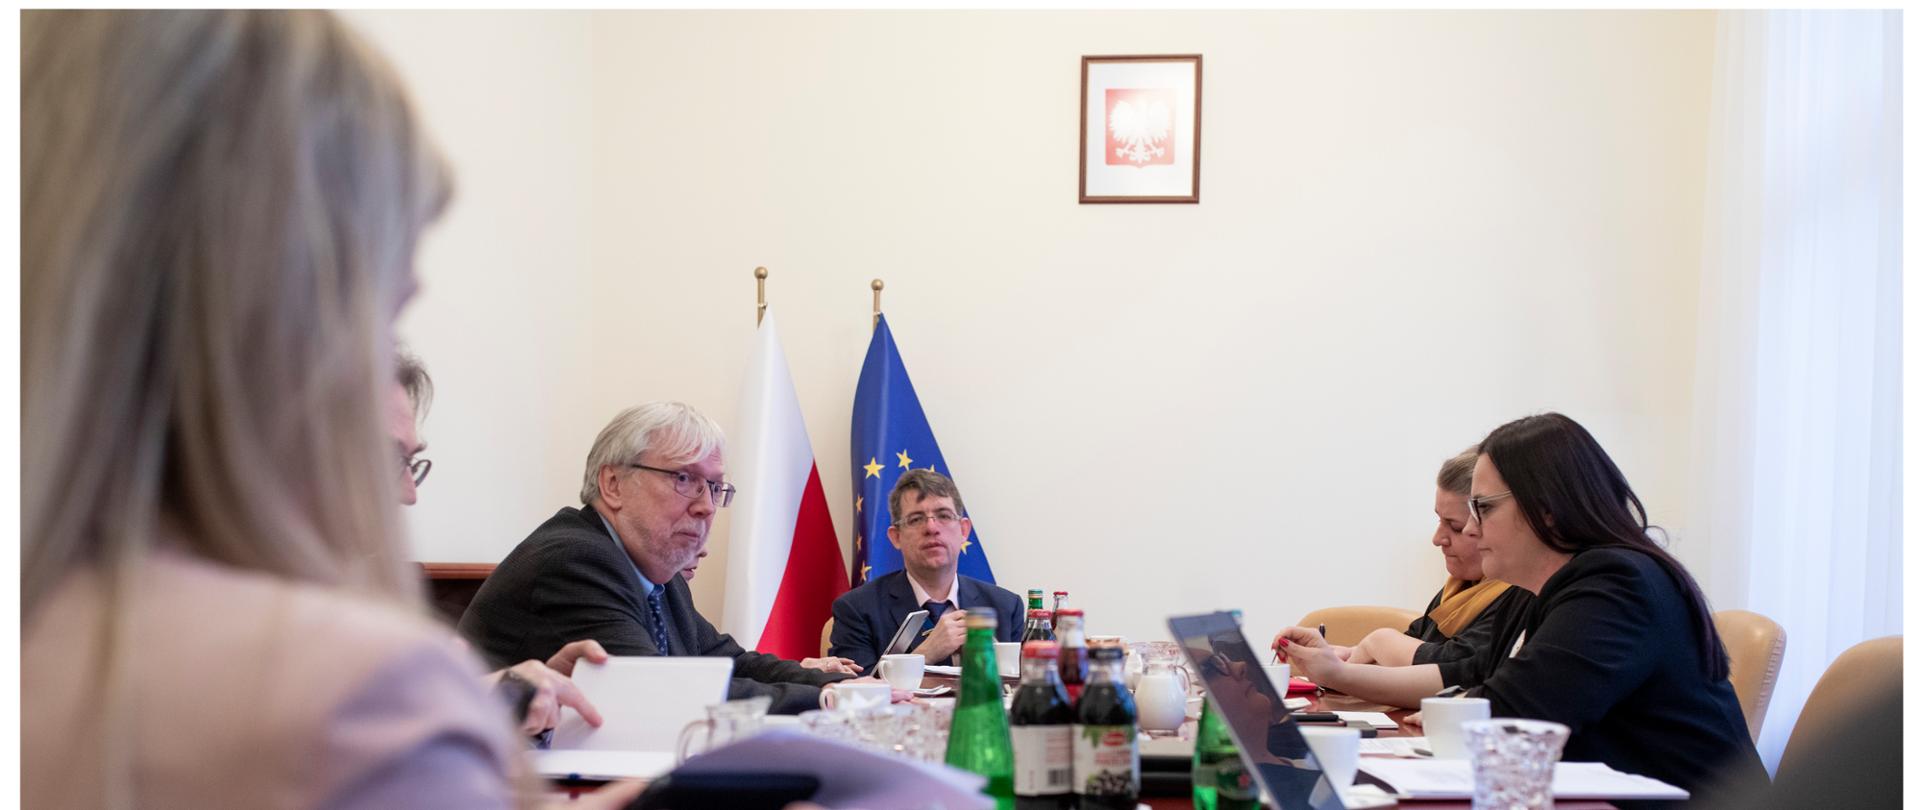 W pokoju przy stole siedzi grupa osób. Za nimi przy ścianie stoją dwie flagi - Polski i UE. Nad nimi wisi godło Polski.